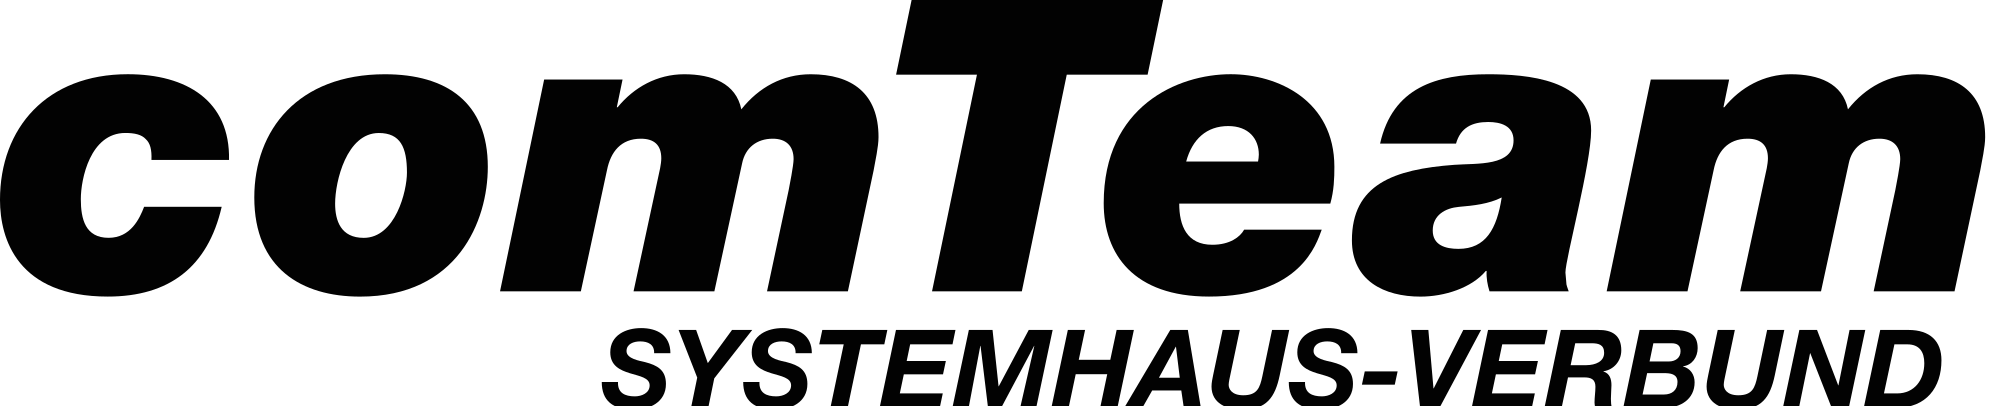 comTeam Systemhaus-Verbund Partner Necotek IT-Systemhaus